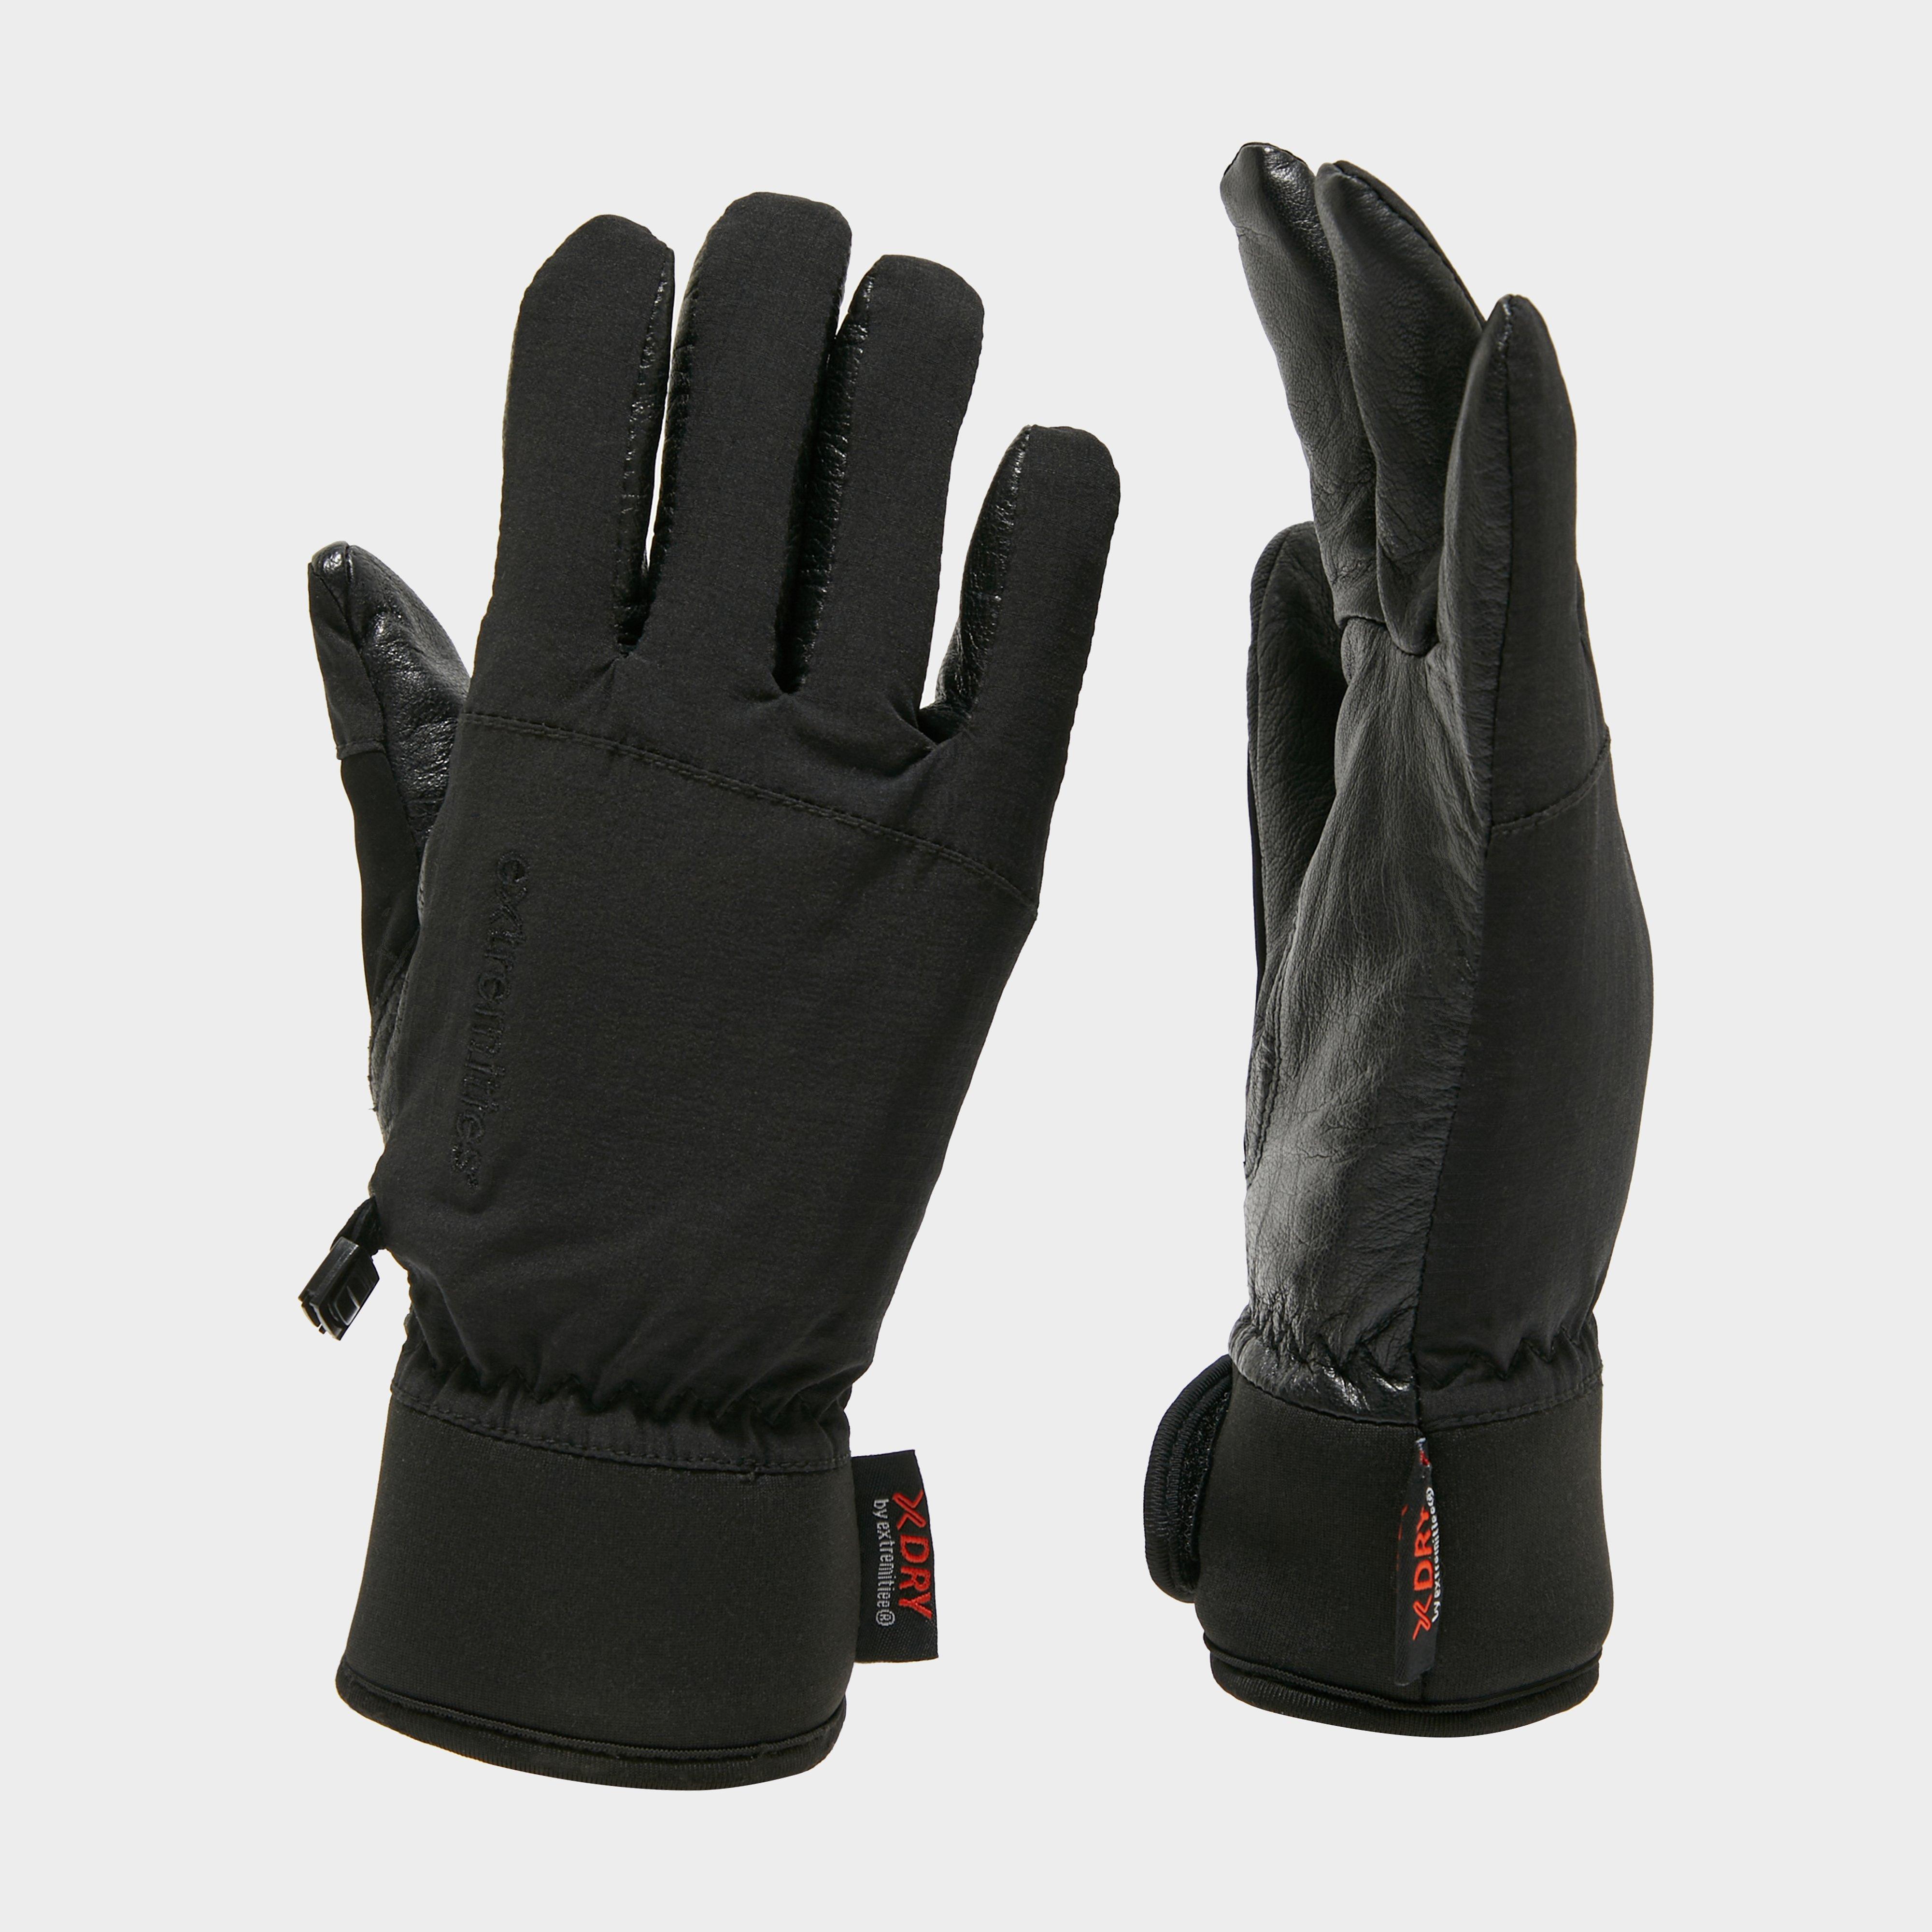 Extremities Mens Sportsman Waterproof Glove - Black/glv  Black/glv